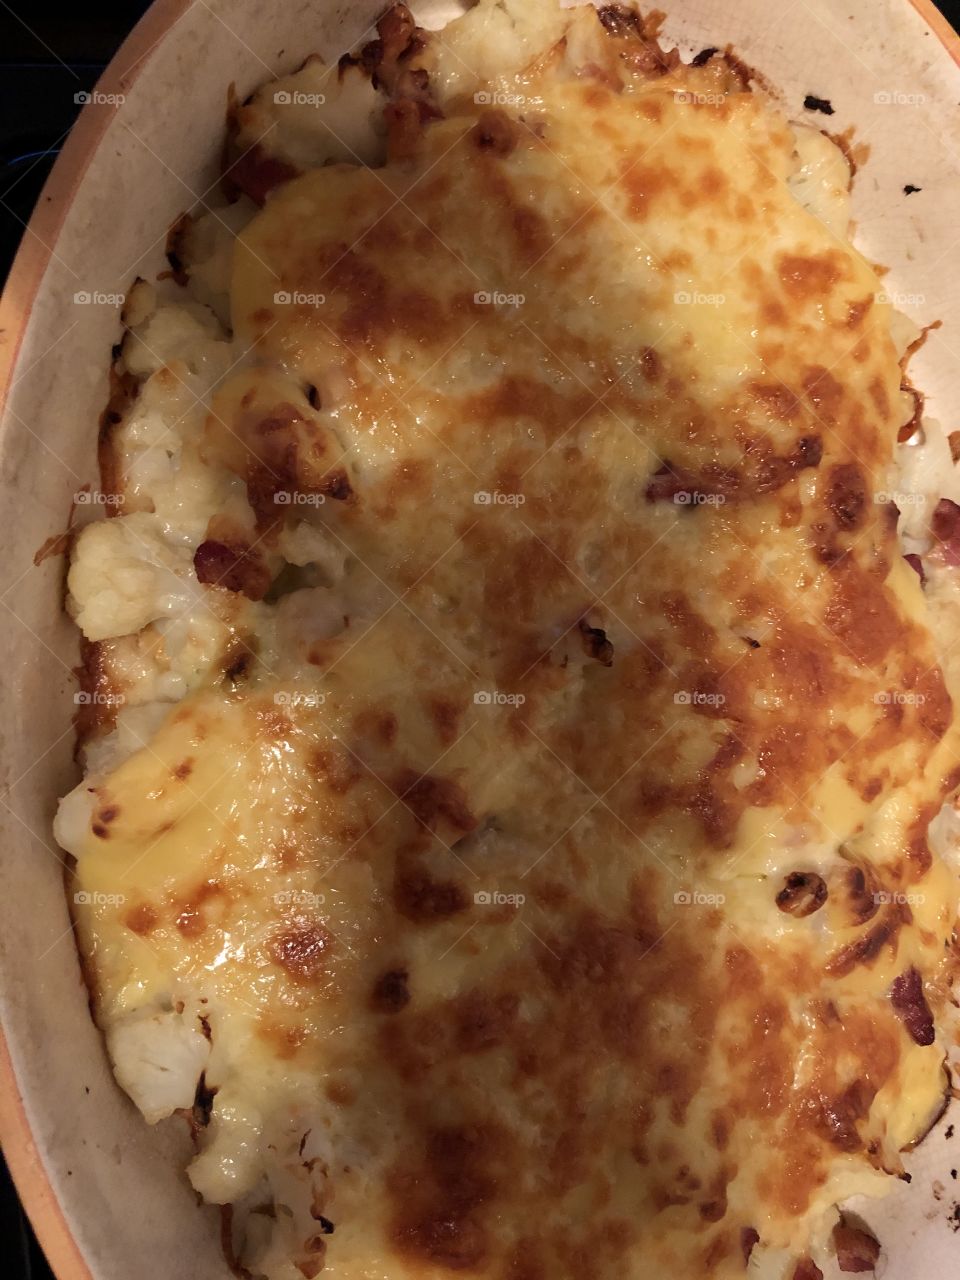 Homemade Cauliflower cheese 😋